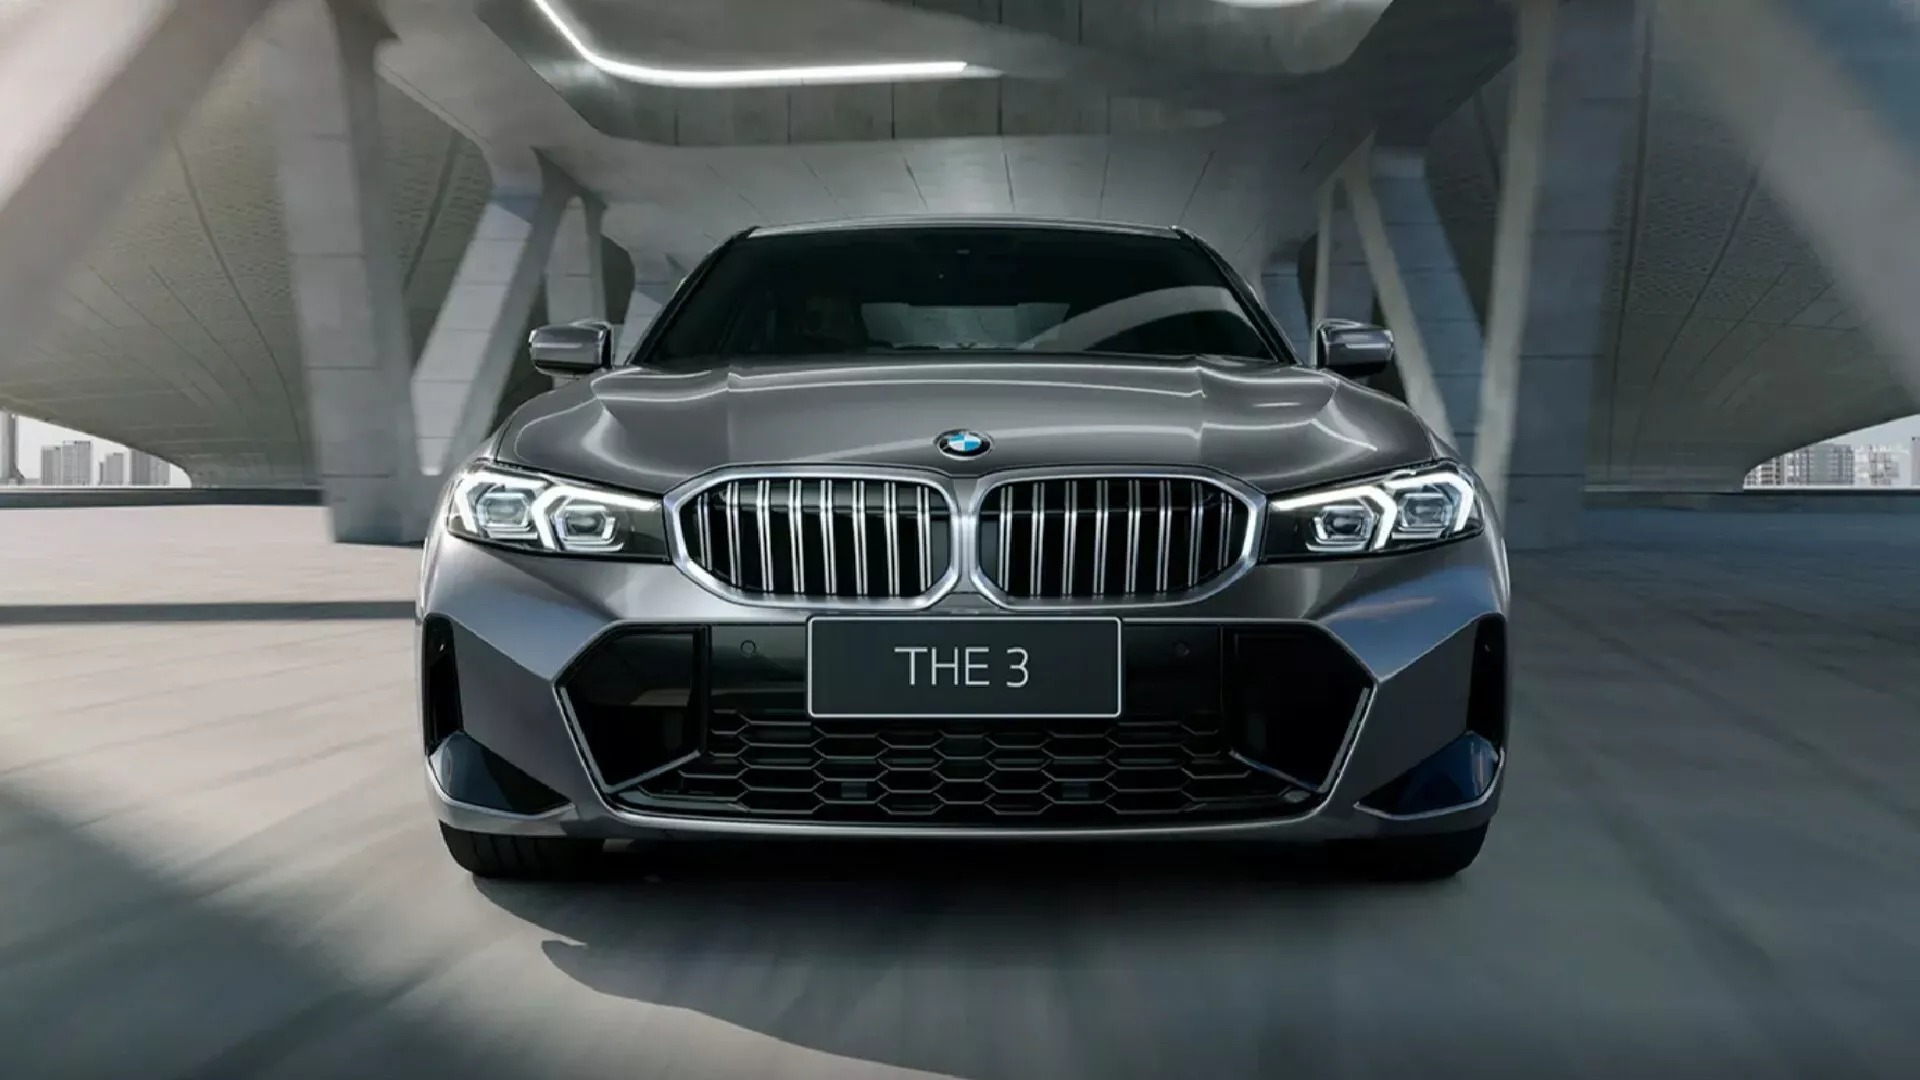 Ra mắt BMW 3-Series kéo dài: Nhìn mắt thường khó tìm ra sự khác biệt - Ảnh 5.